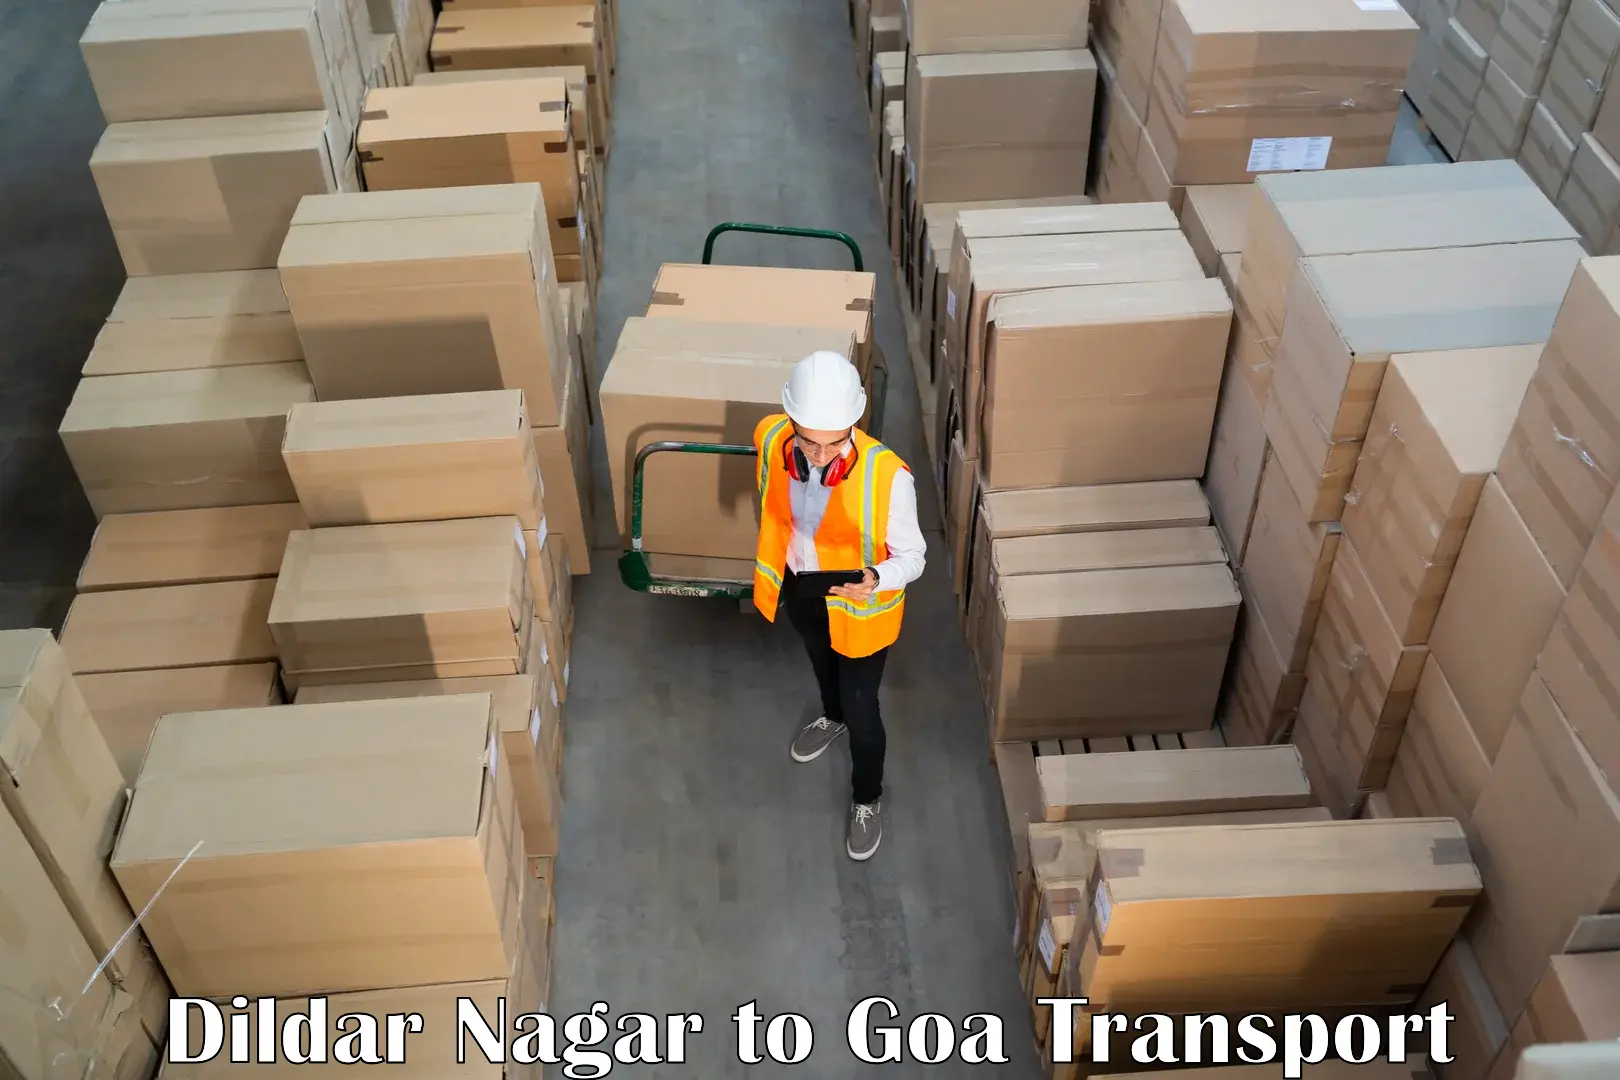 All India transport service Dildar Nagar to Mormugao Port